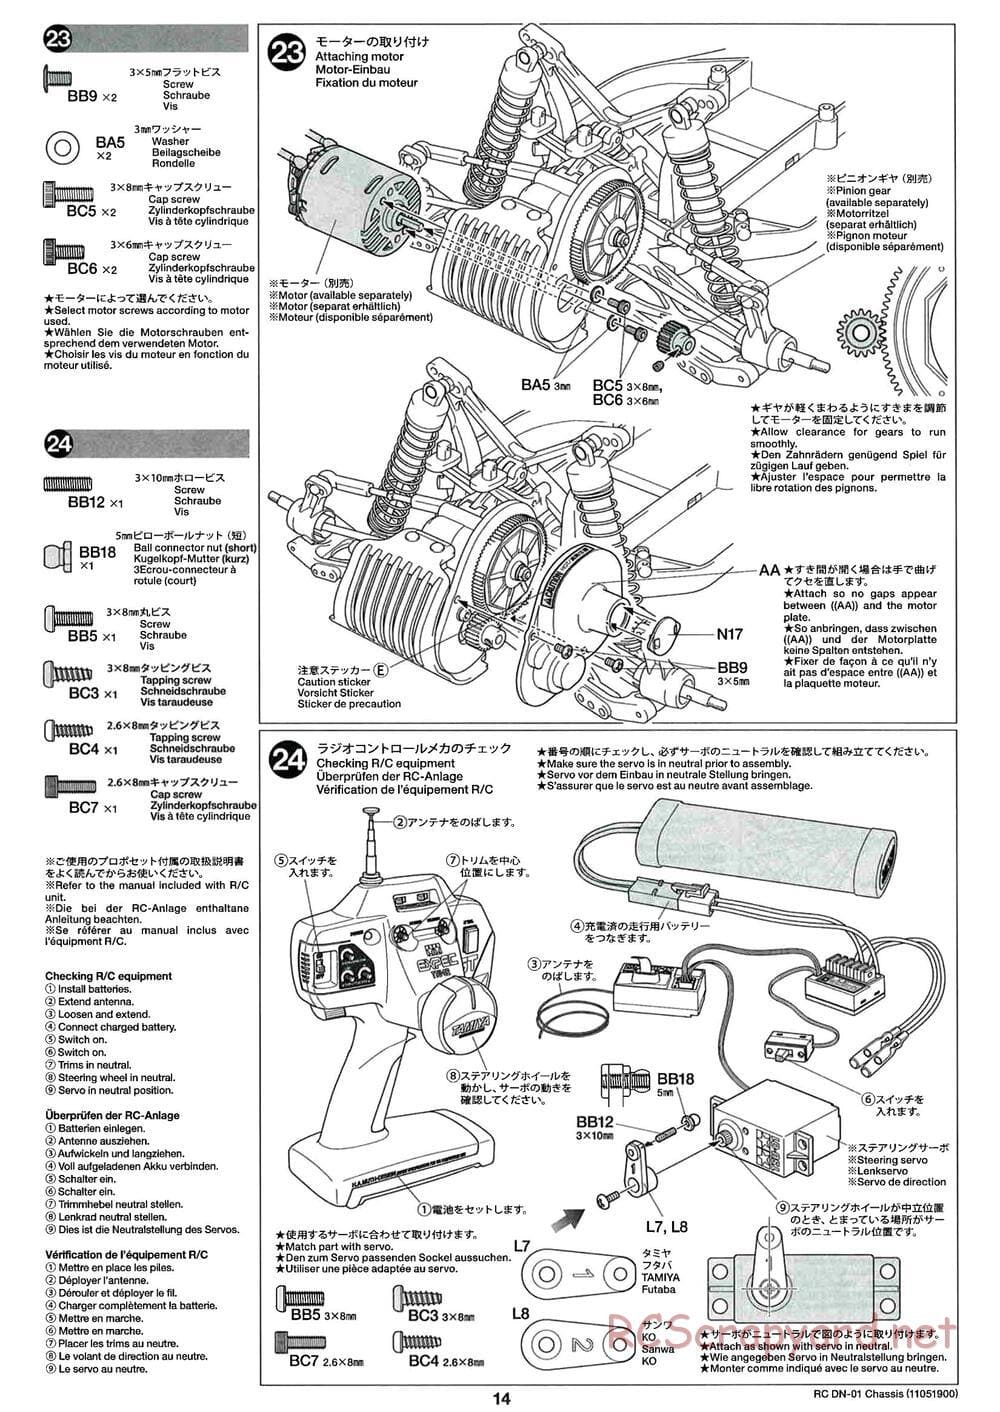 Tamiya - DN-01 Chassis - Manual - Page 14